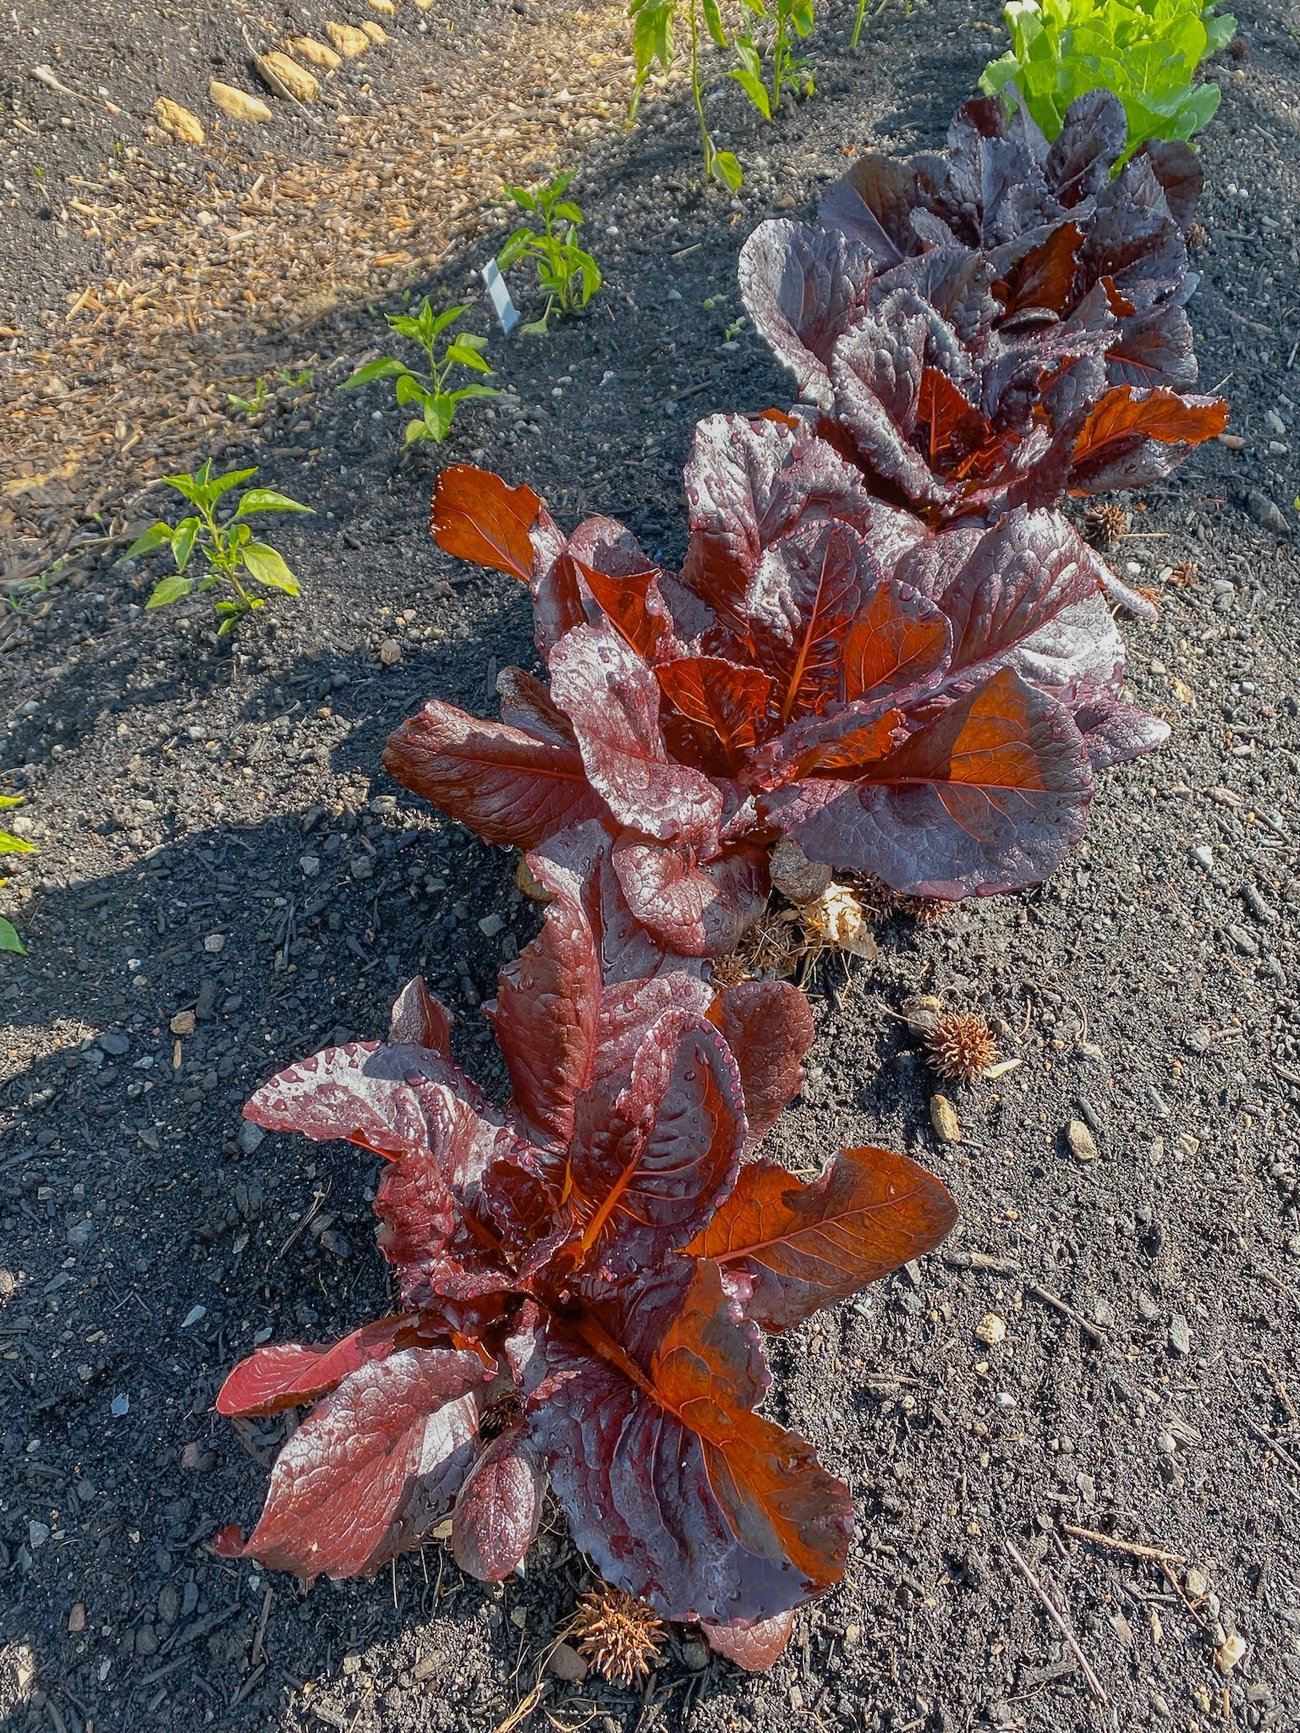 Red leaf lettuce plants